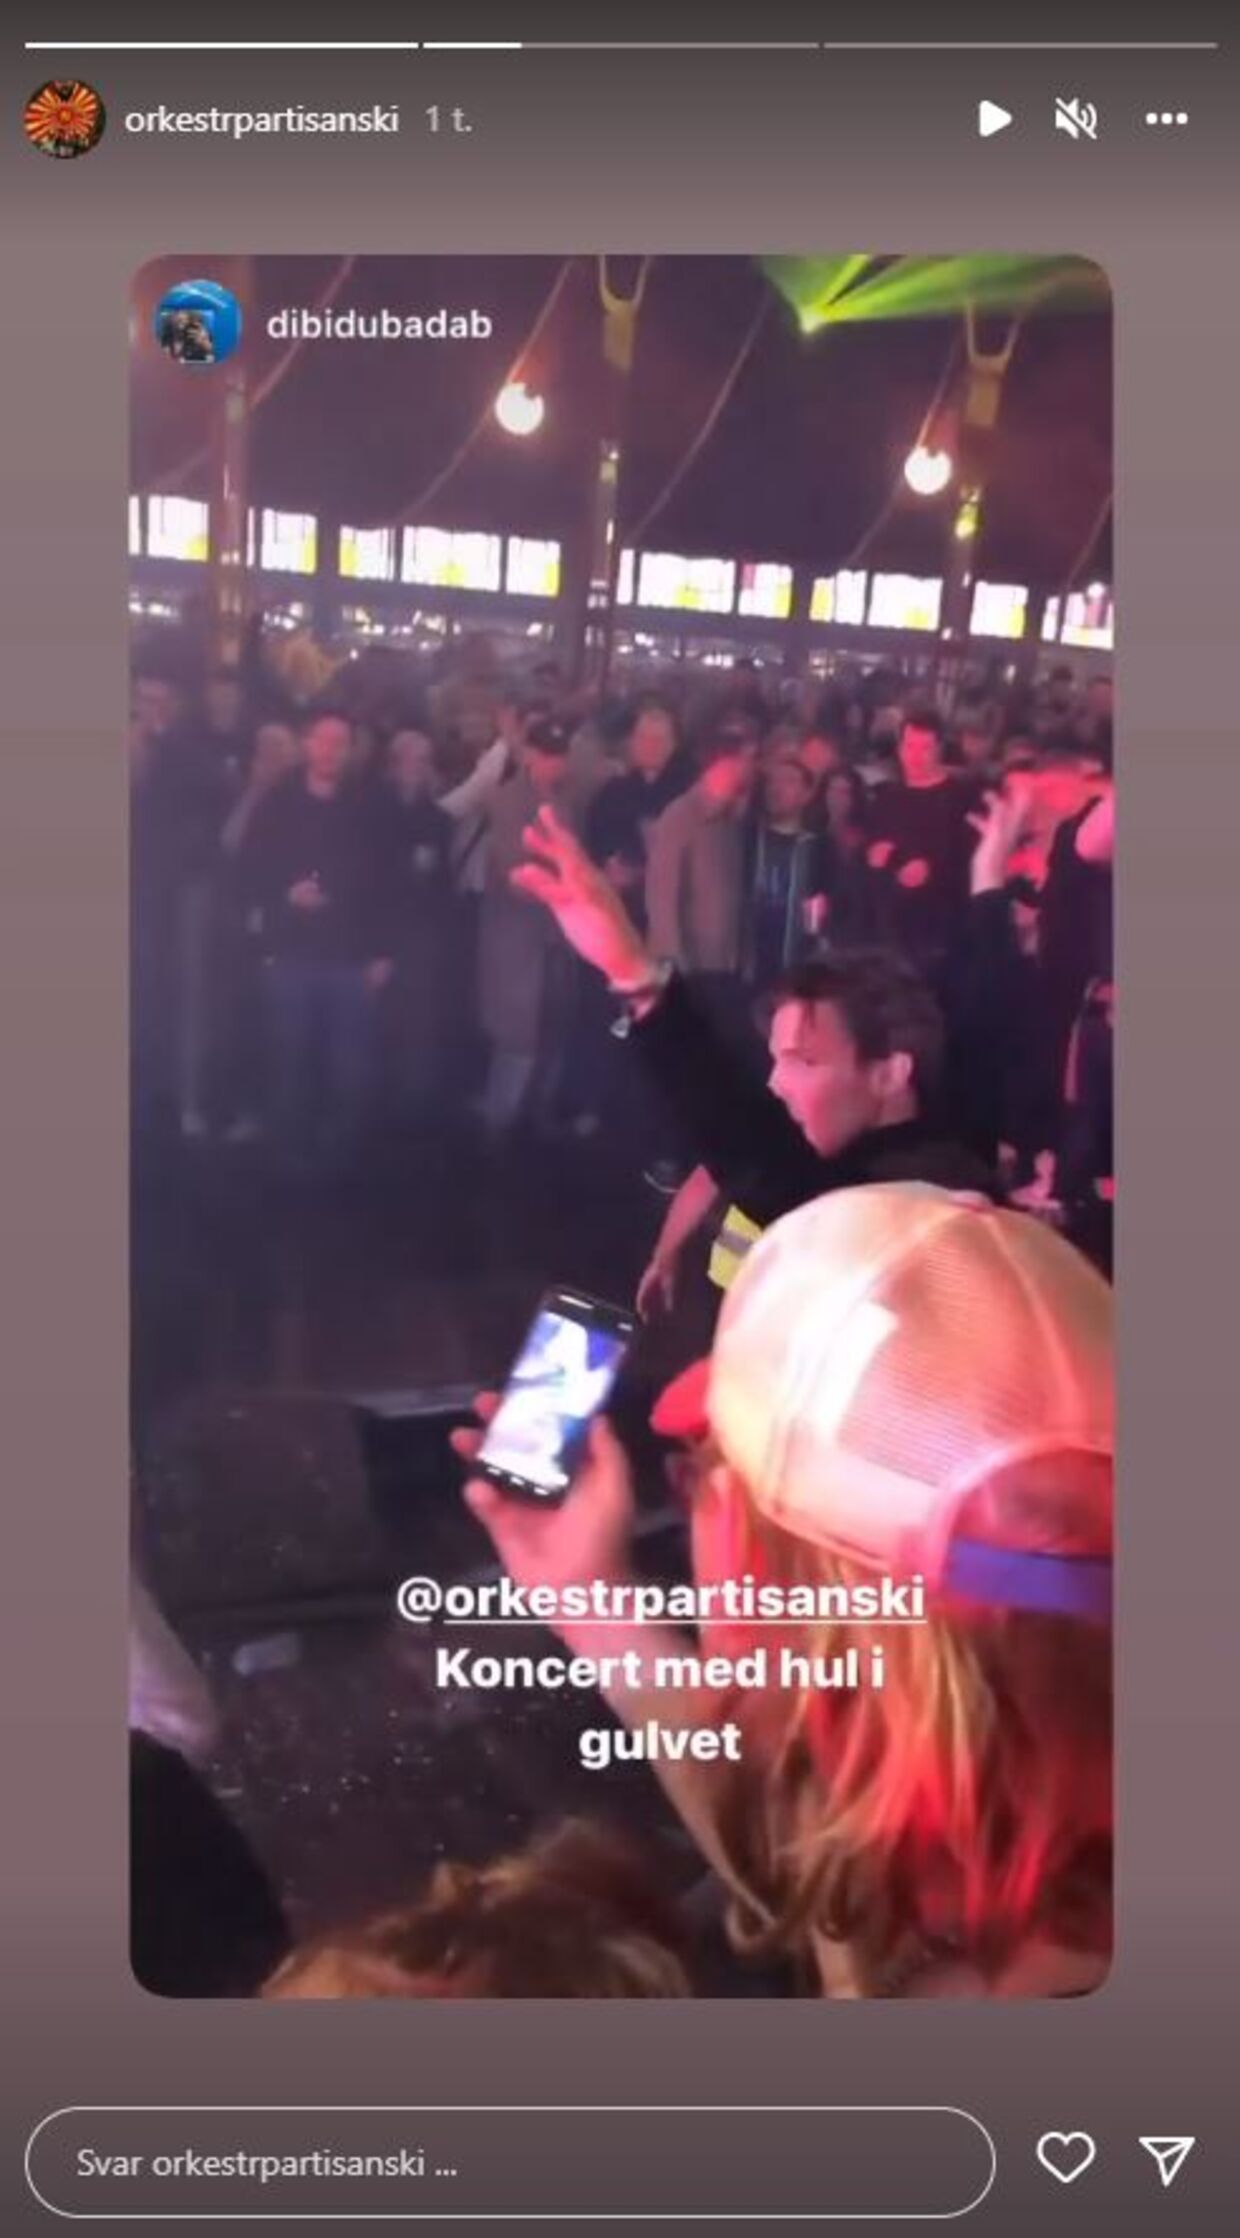 Orkest partisanski delte torsdag aften en video af det ødelagte dansegulv på deres Instagram-profil.